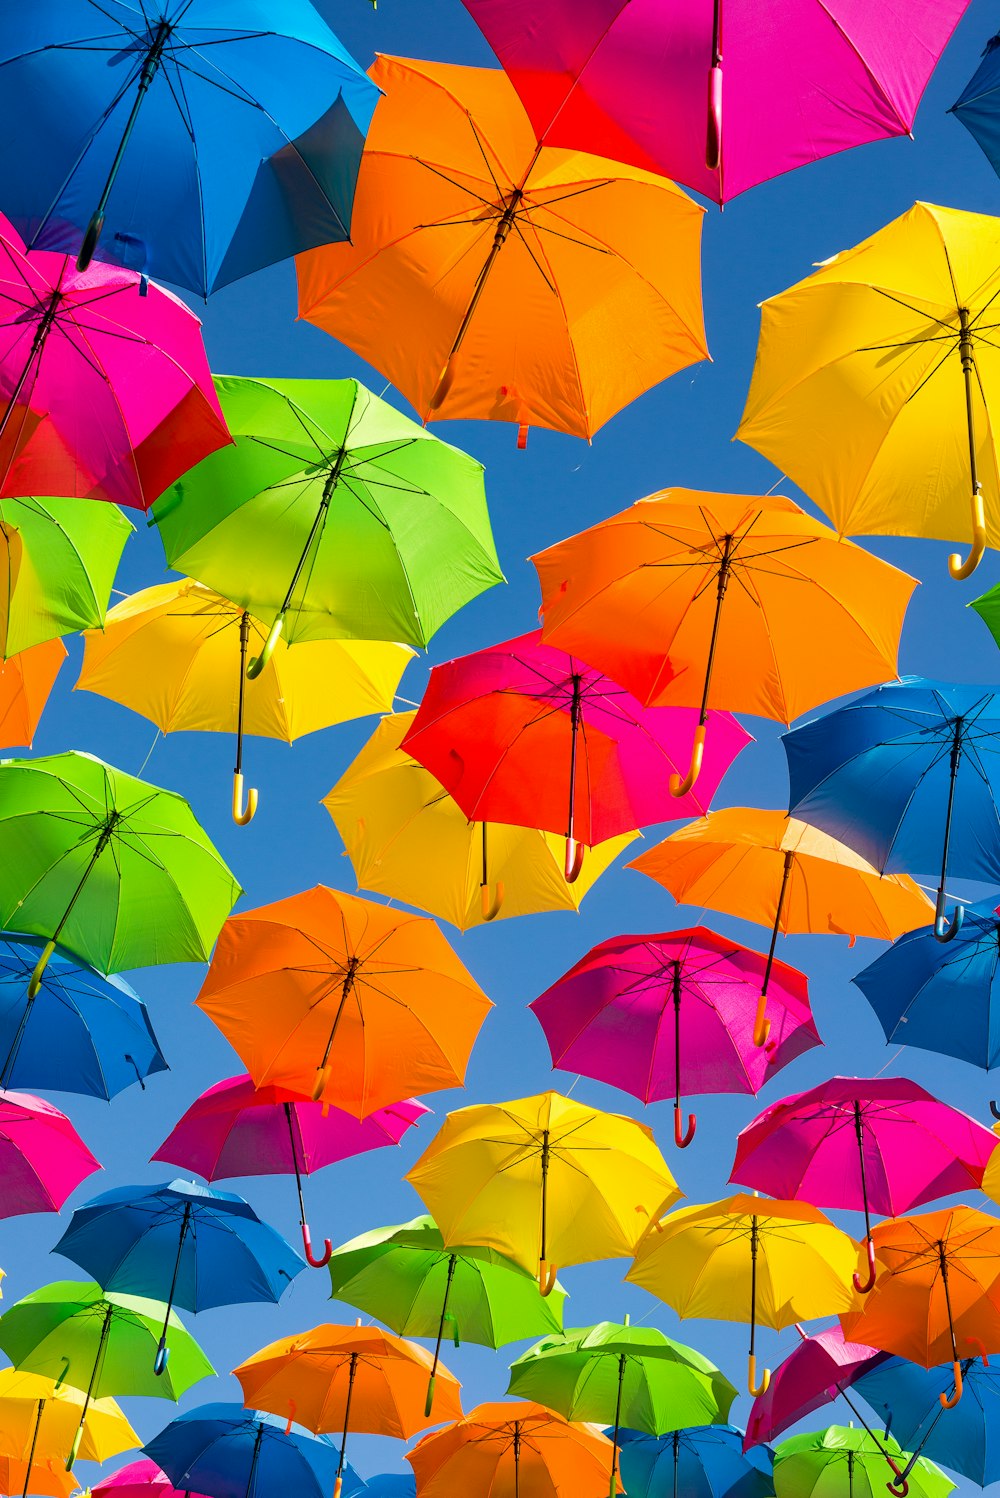 Persona tomando foto de paraguas de colores variados